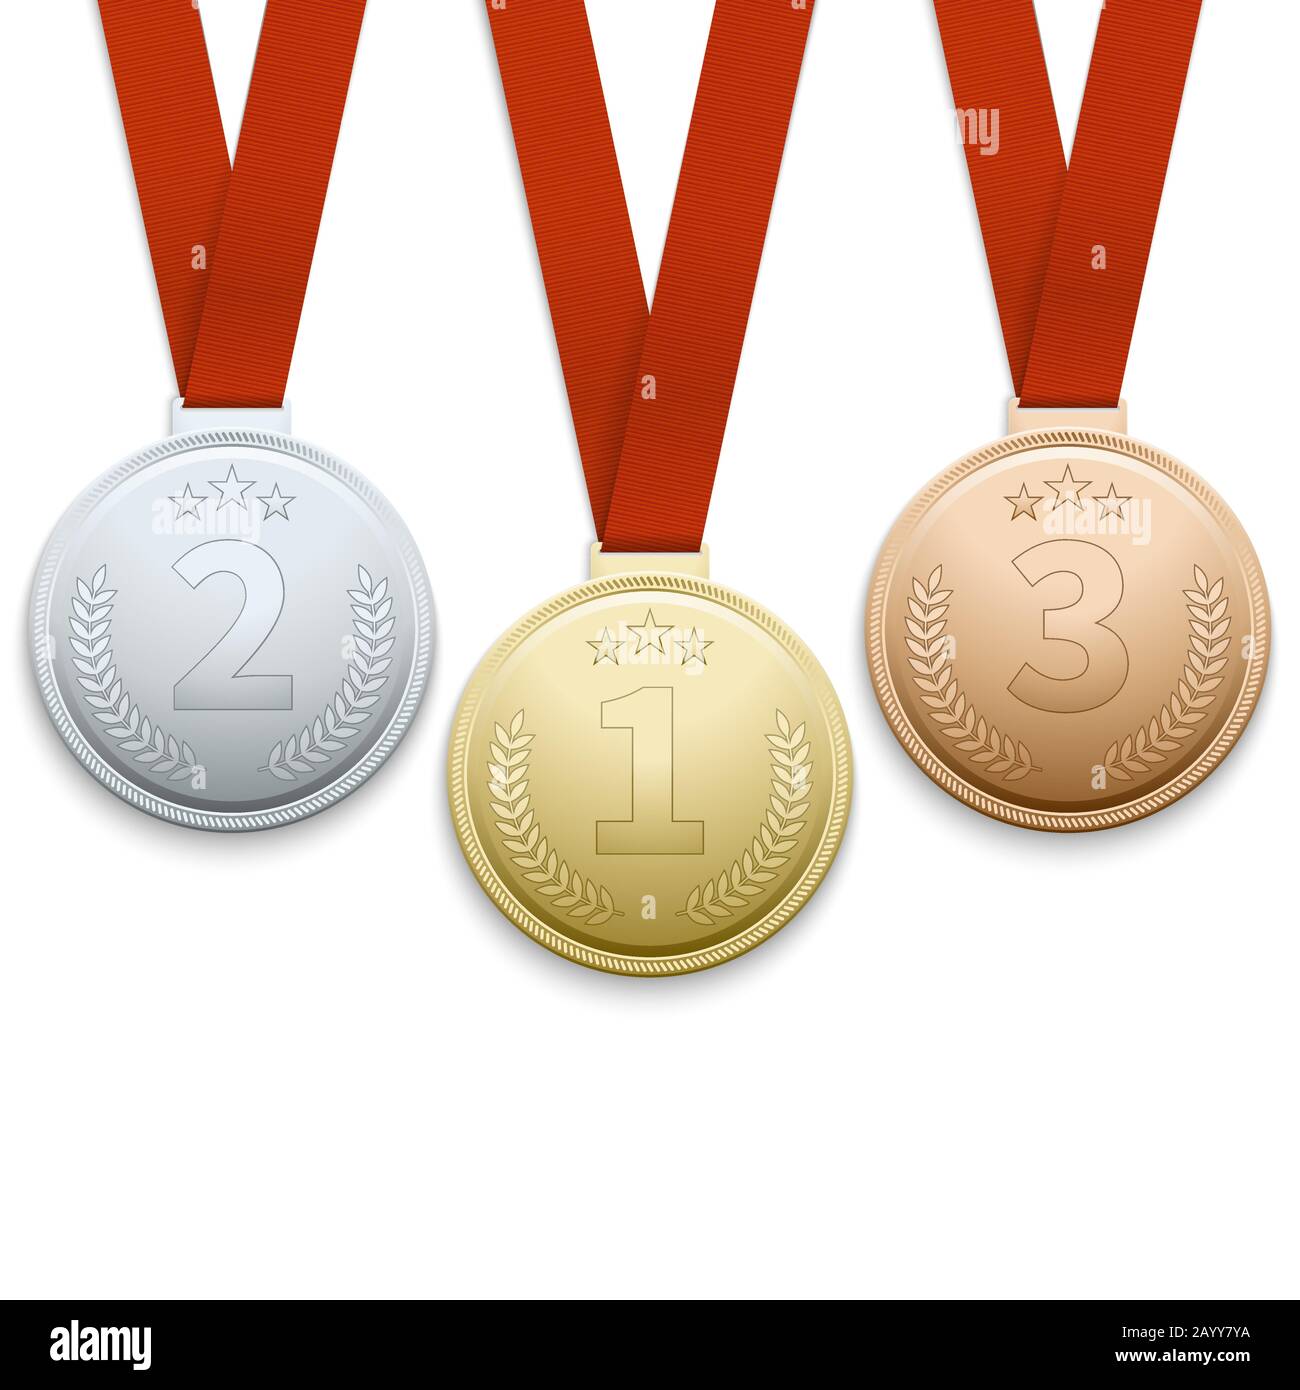 medallas de oro, plata y bronce vector.campeón y ganador premios